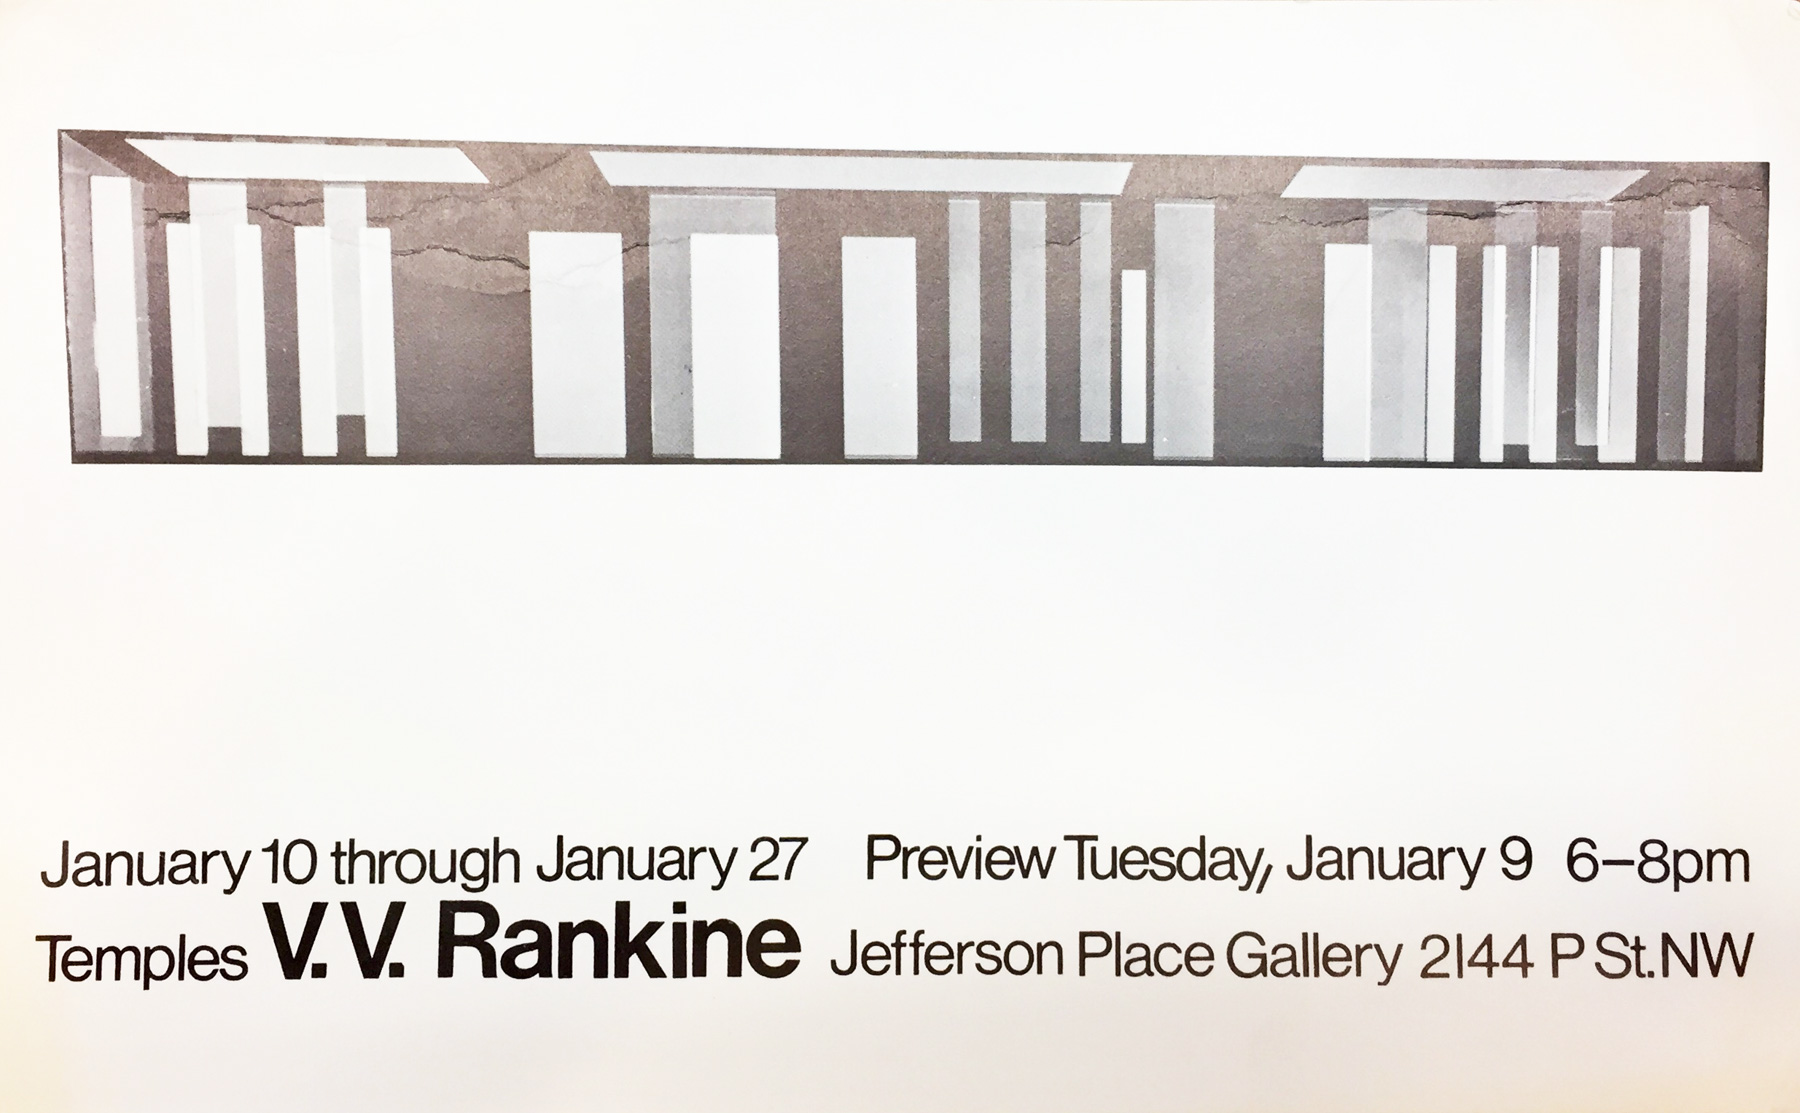 Announcement card for V. V. Rankine 